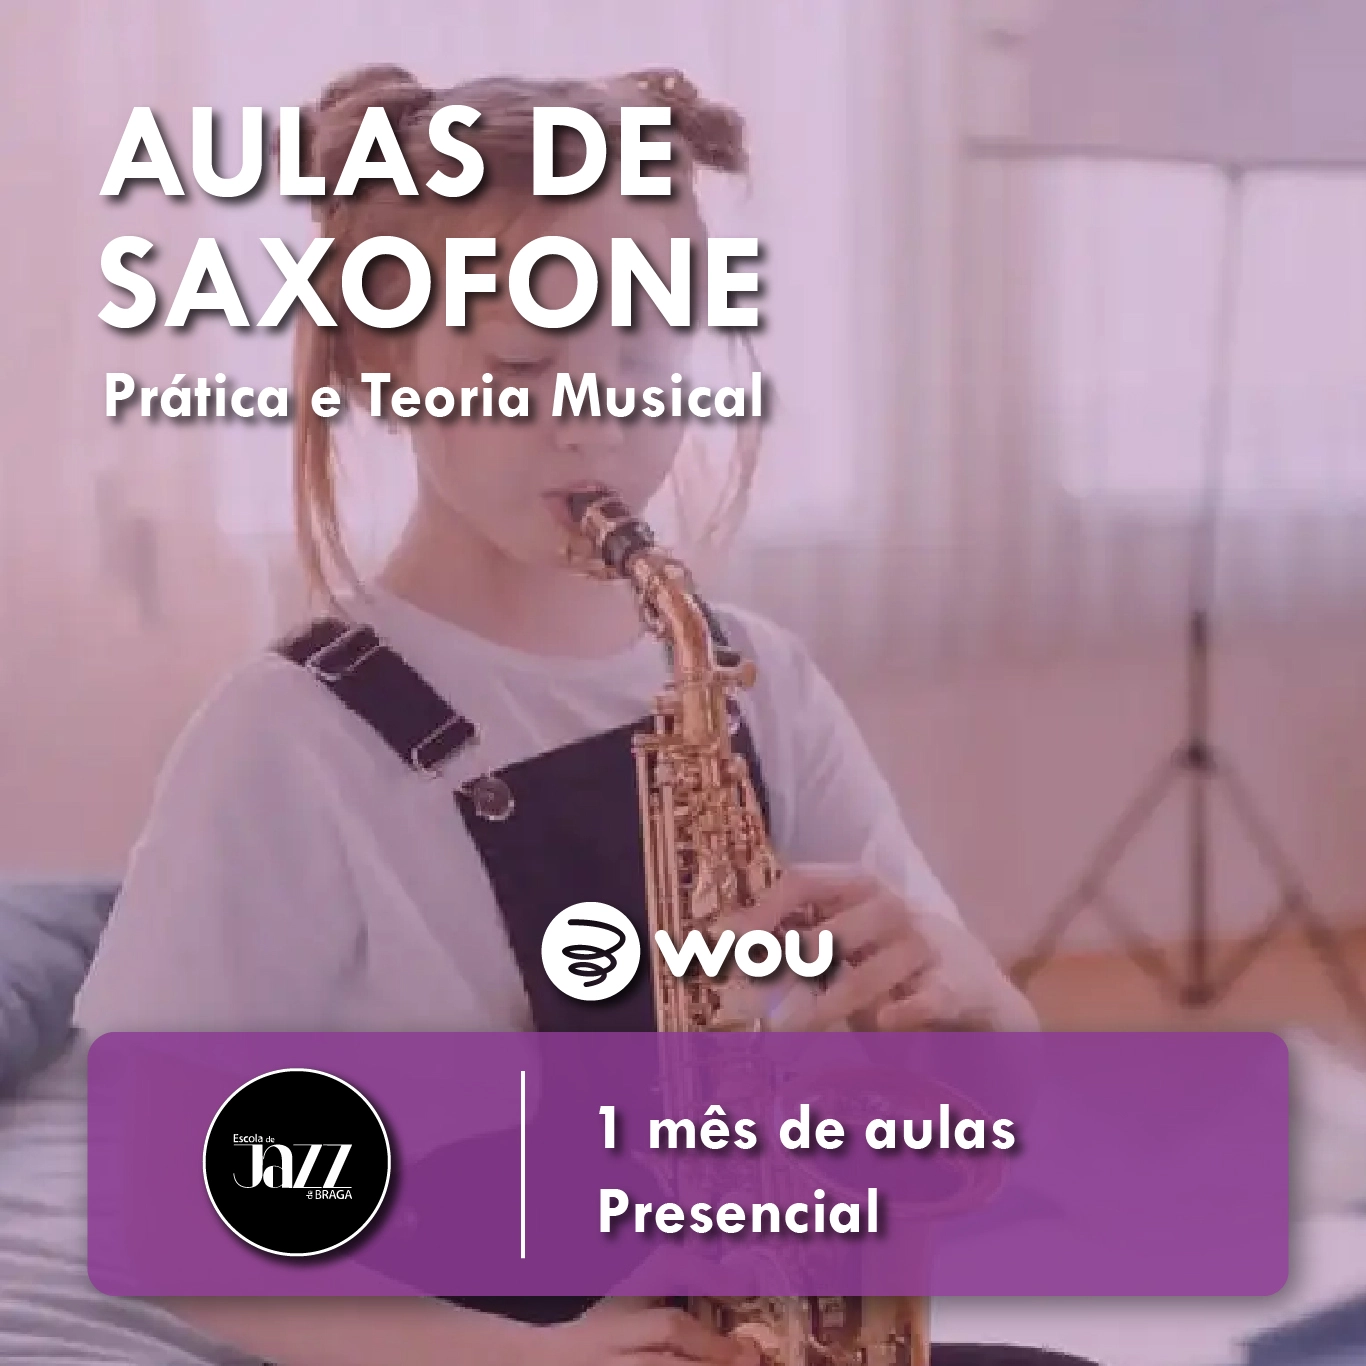 Aulas de Saxofone em Braga